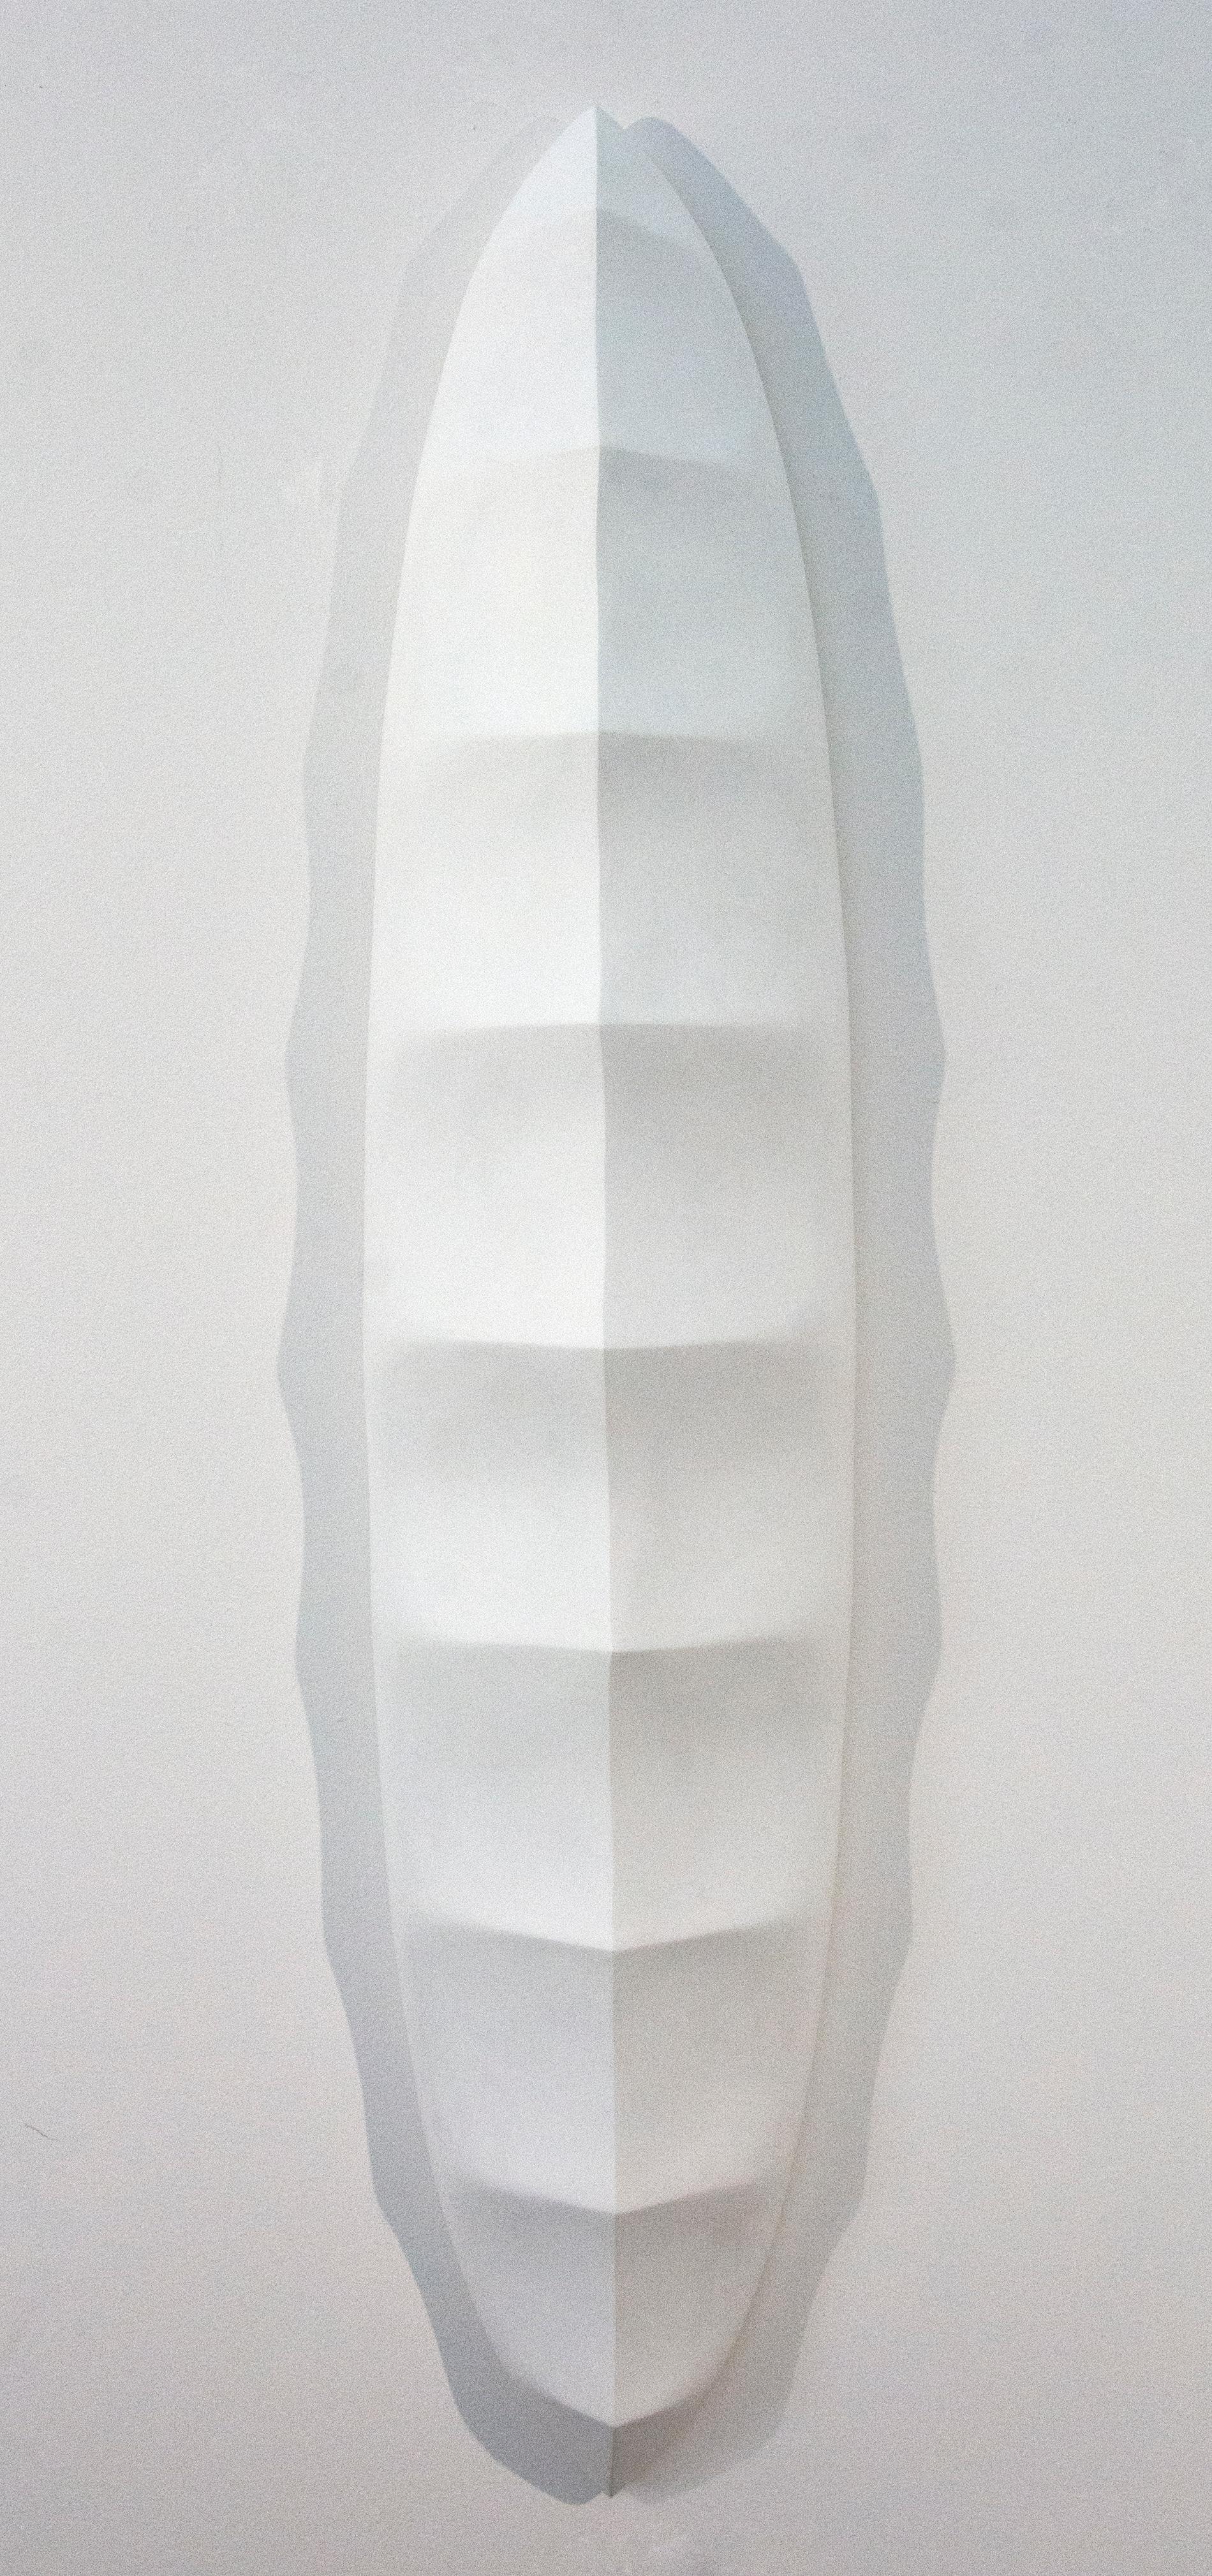 Biomorphic No 3 – helles, weißes, minimalistisches, abstraktes Wandrelief aus Gips und Wachs (Zeitgenössisch), Sculpture, von Jana Osterman